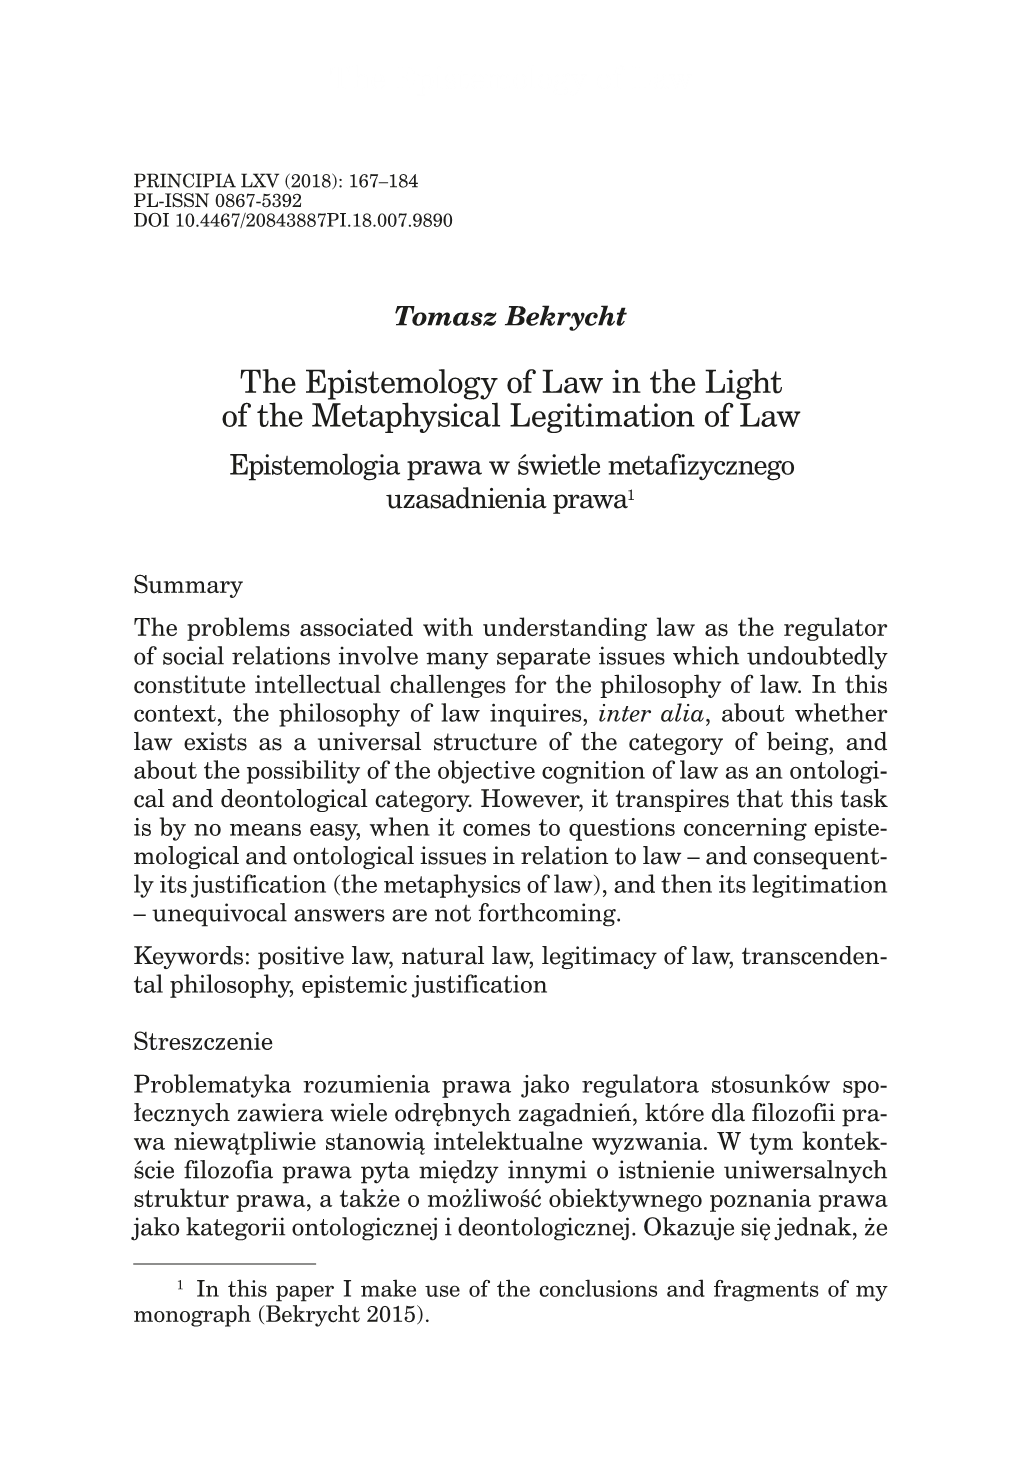 The Epistemology of Law in the Light of the Metaphysical Legitimation of Law Epistemologia Prawa W Świetle Metafizycznego Uzasadnienia Prawa1